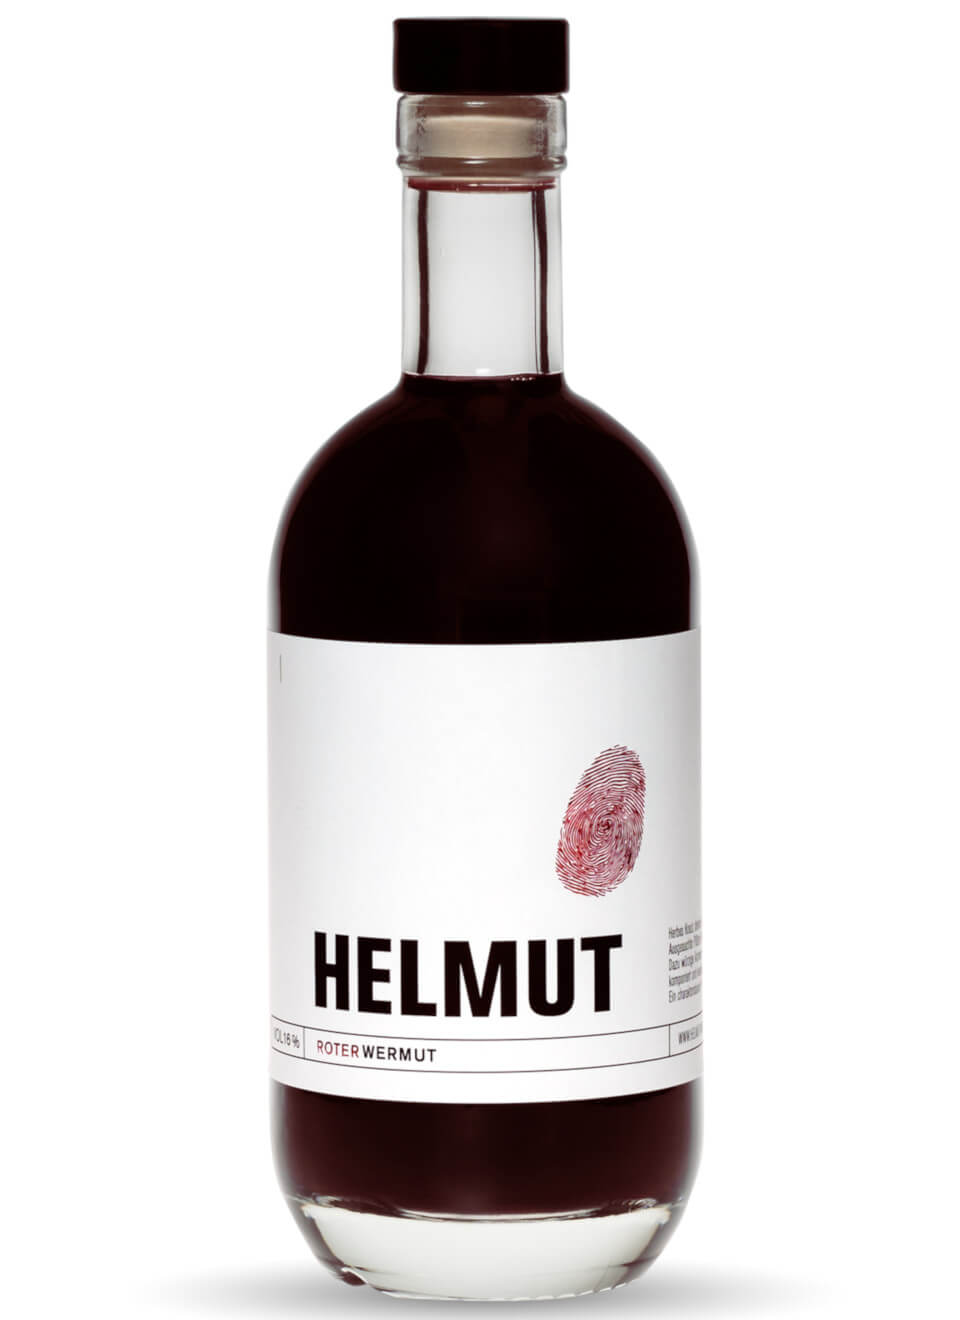  Helmut Wermut der Rote Flasche 1 x 0,75 l